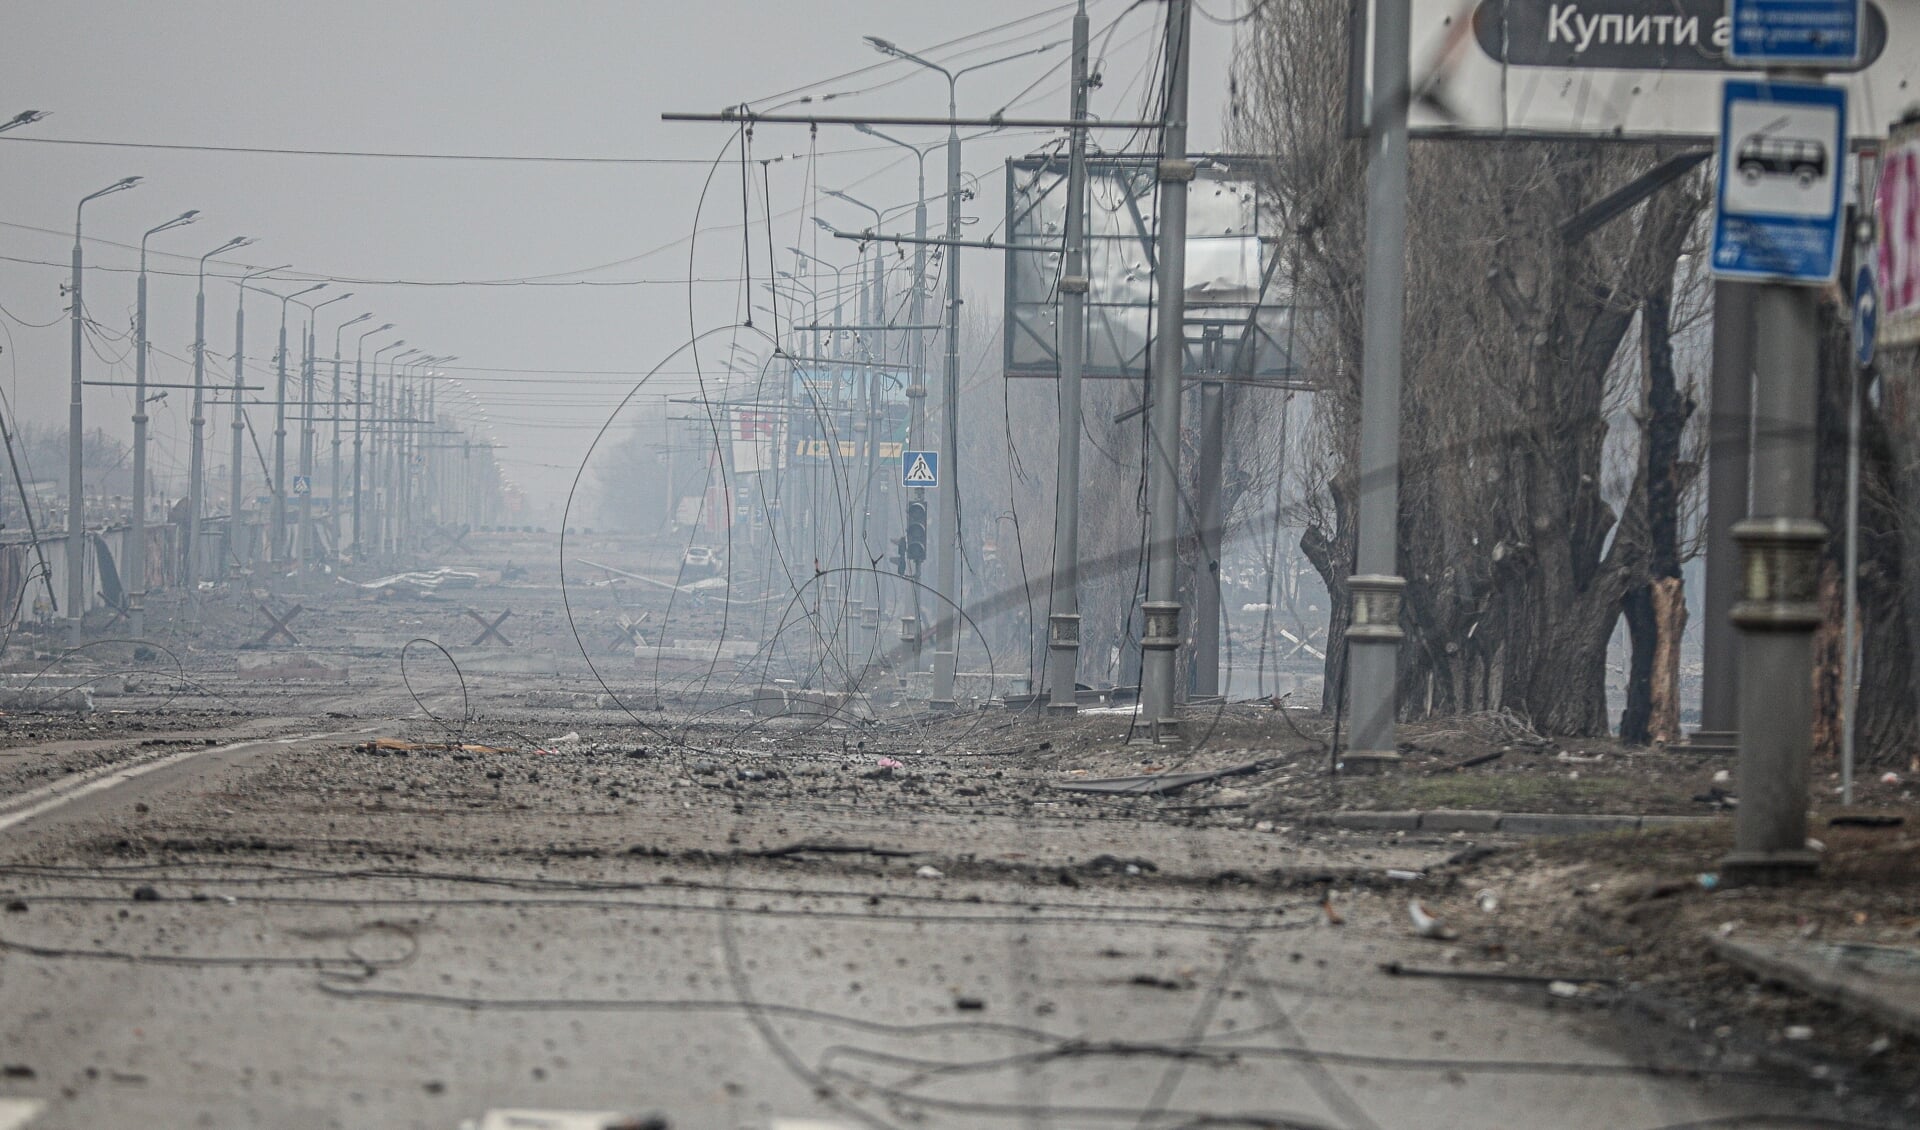 Kampene i Ukraine har nu stået på i over en måned. Foto: 